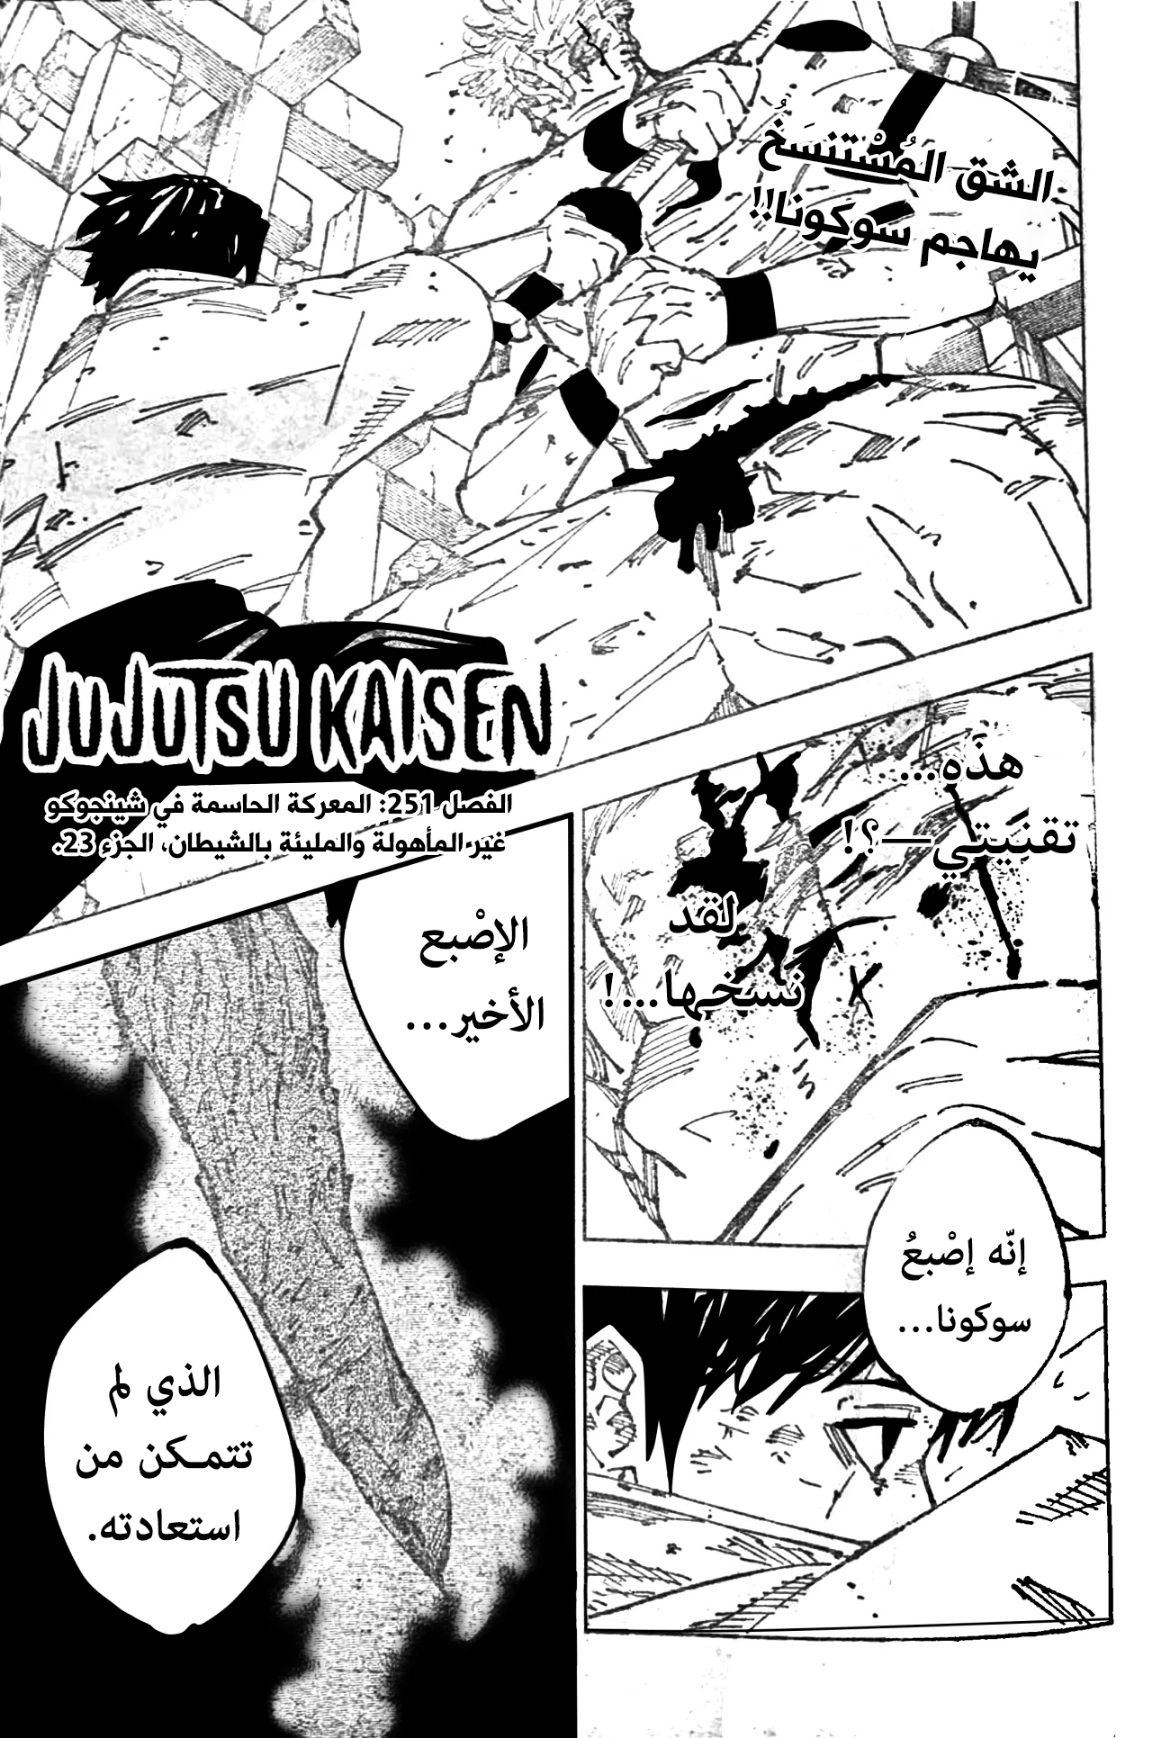 Jujutsu Kaisen: Chapter 251 - Page 1